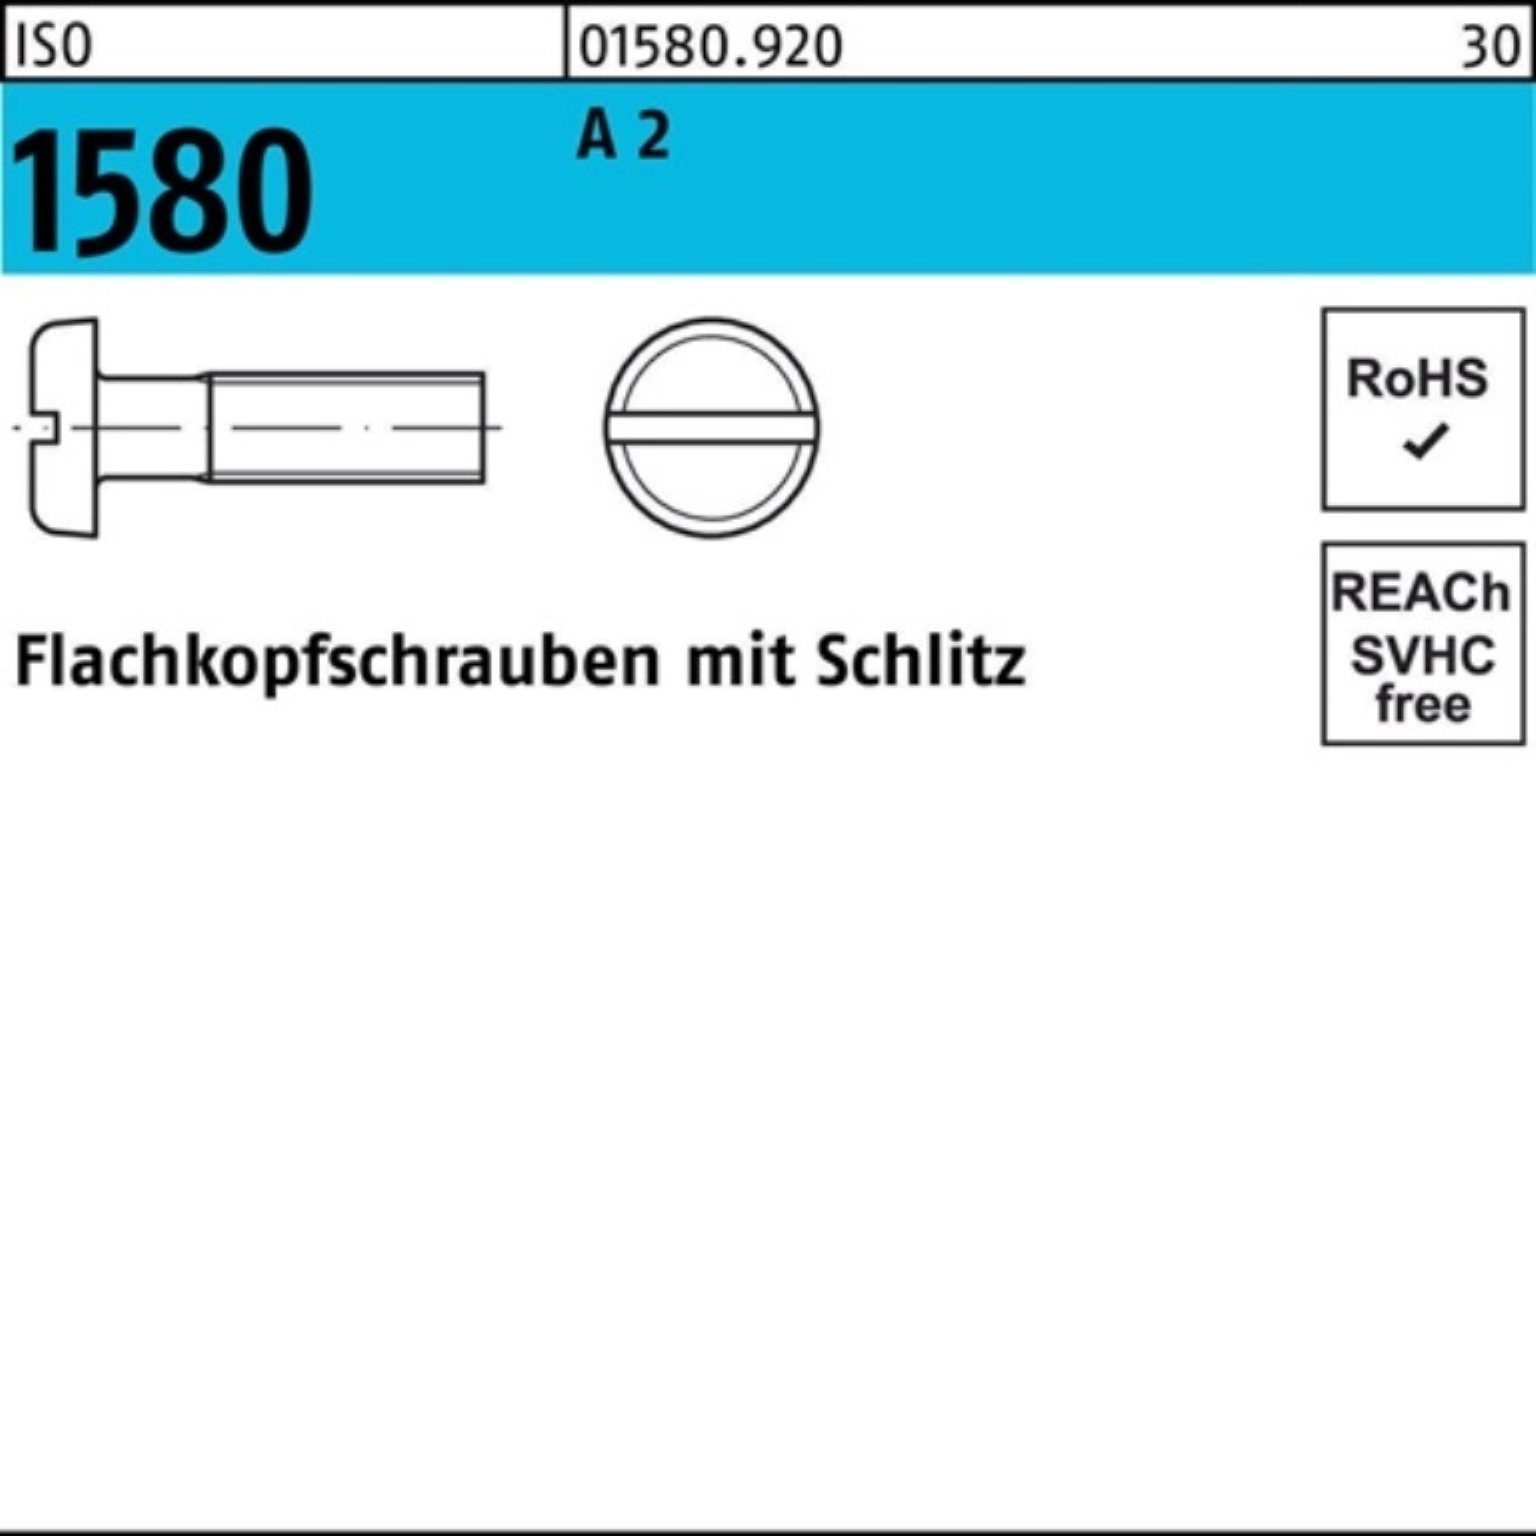 Reyher Schraube Pack ISO IS Flachkopfschraube A 45 M5x 500 500er 2 1580 Stück Schlitz